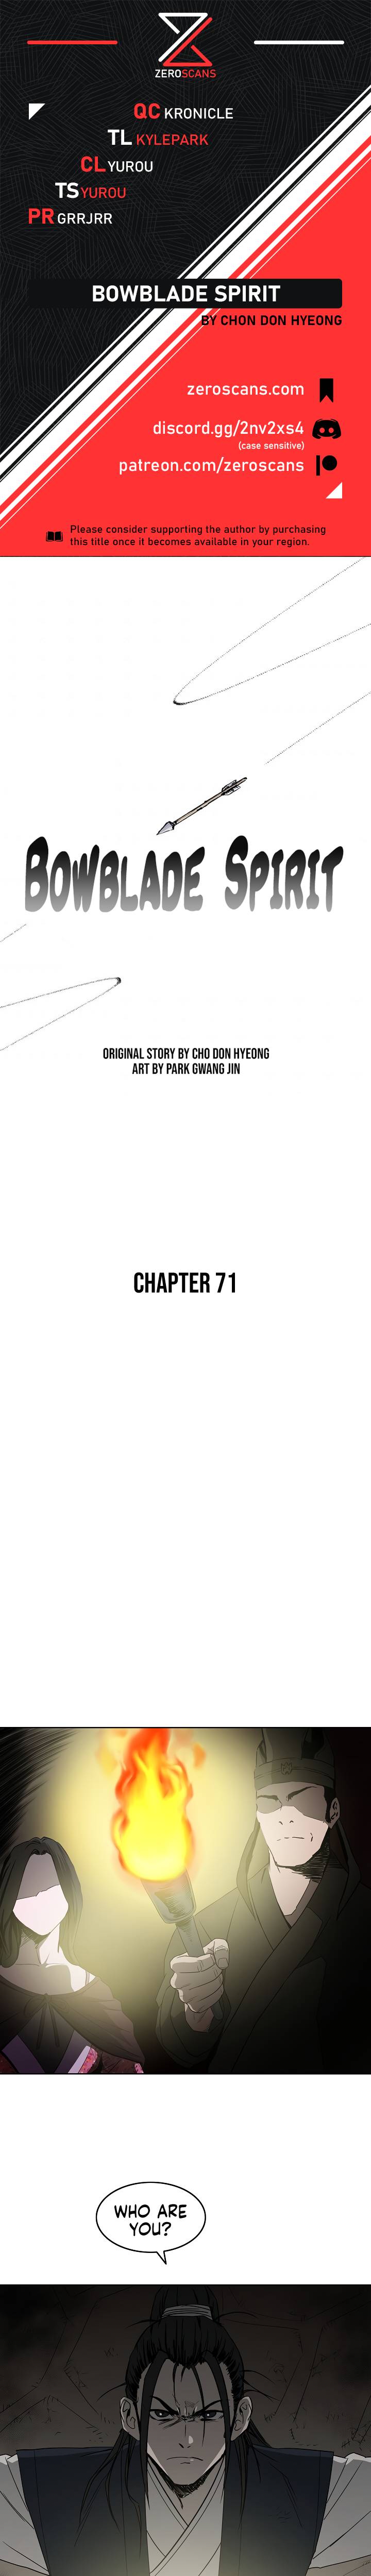 Bowblade Spirit - Chapter 71 Page 1